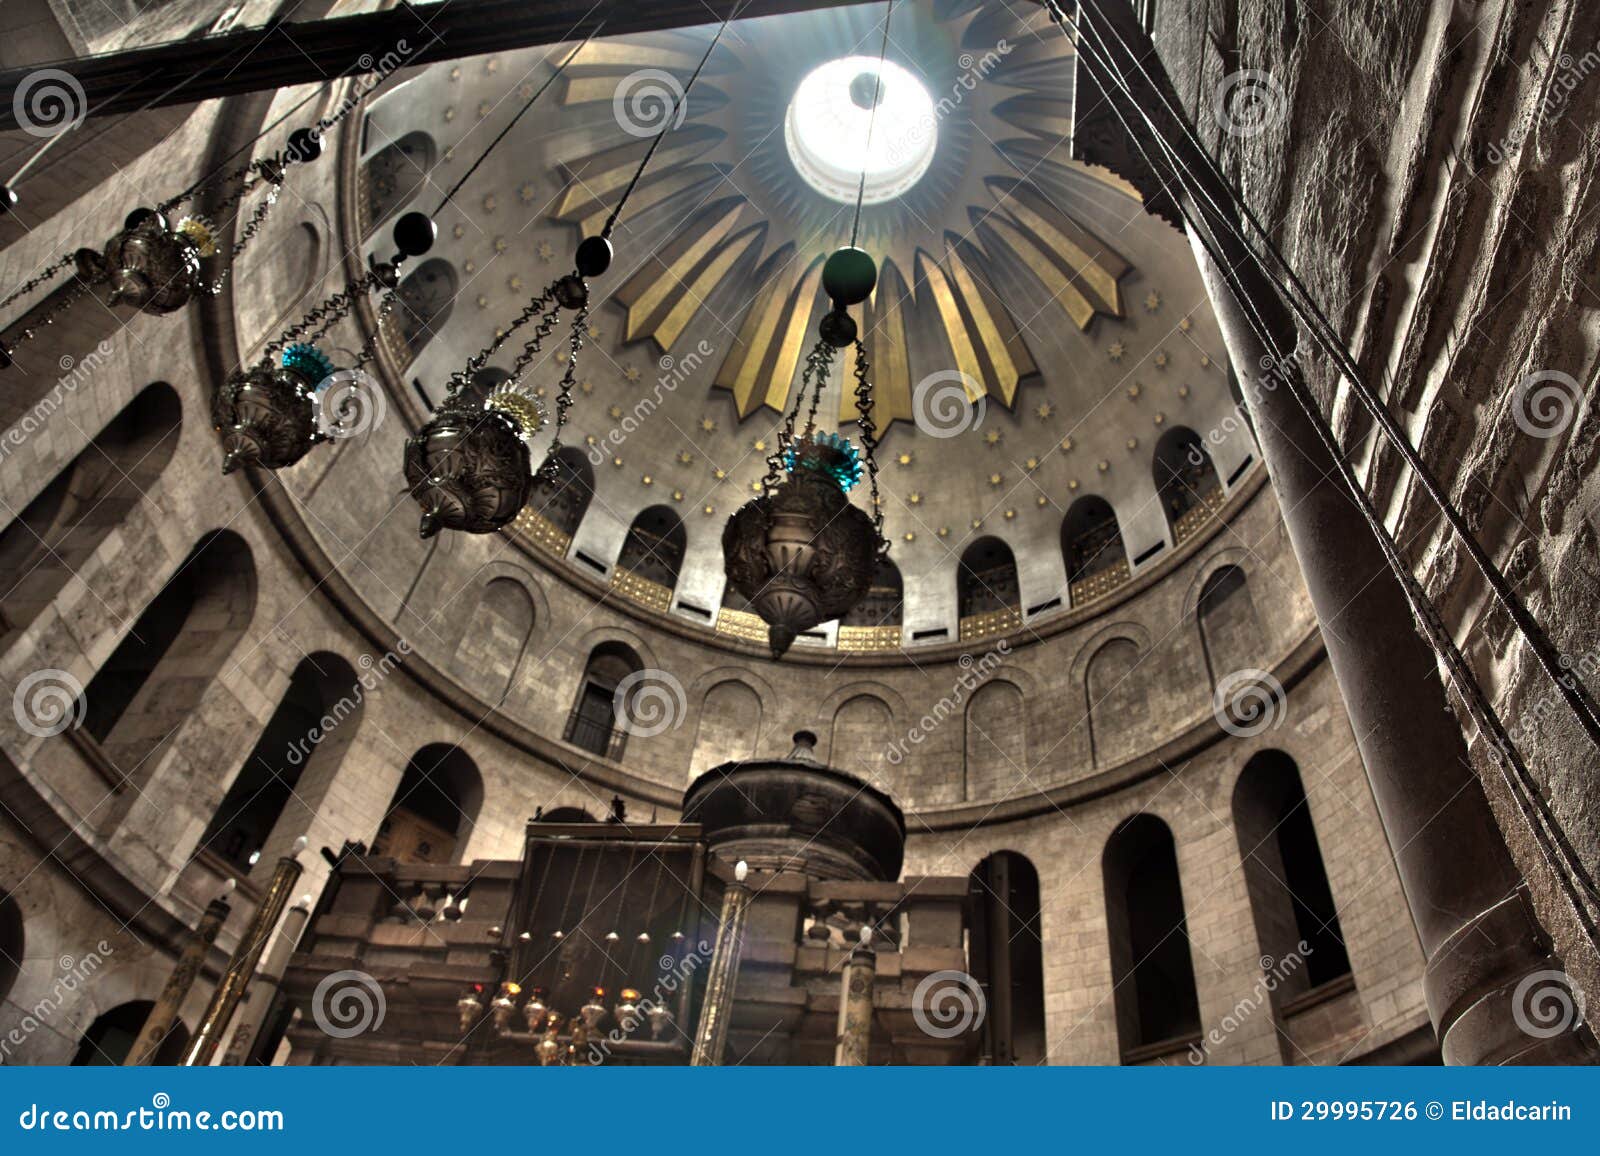 Kościół Święty Sepulchre - rotunda & Edicule. Rotunda nad Edicule w kościół Święty Sepulchre w starym mieście Jerozolima, Izrael. Według kościół katolicki, to jest miejsce zakopywał wewnątrz po jego krzyżowania. (i wtedy wskrzeczał)